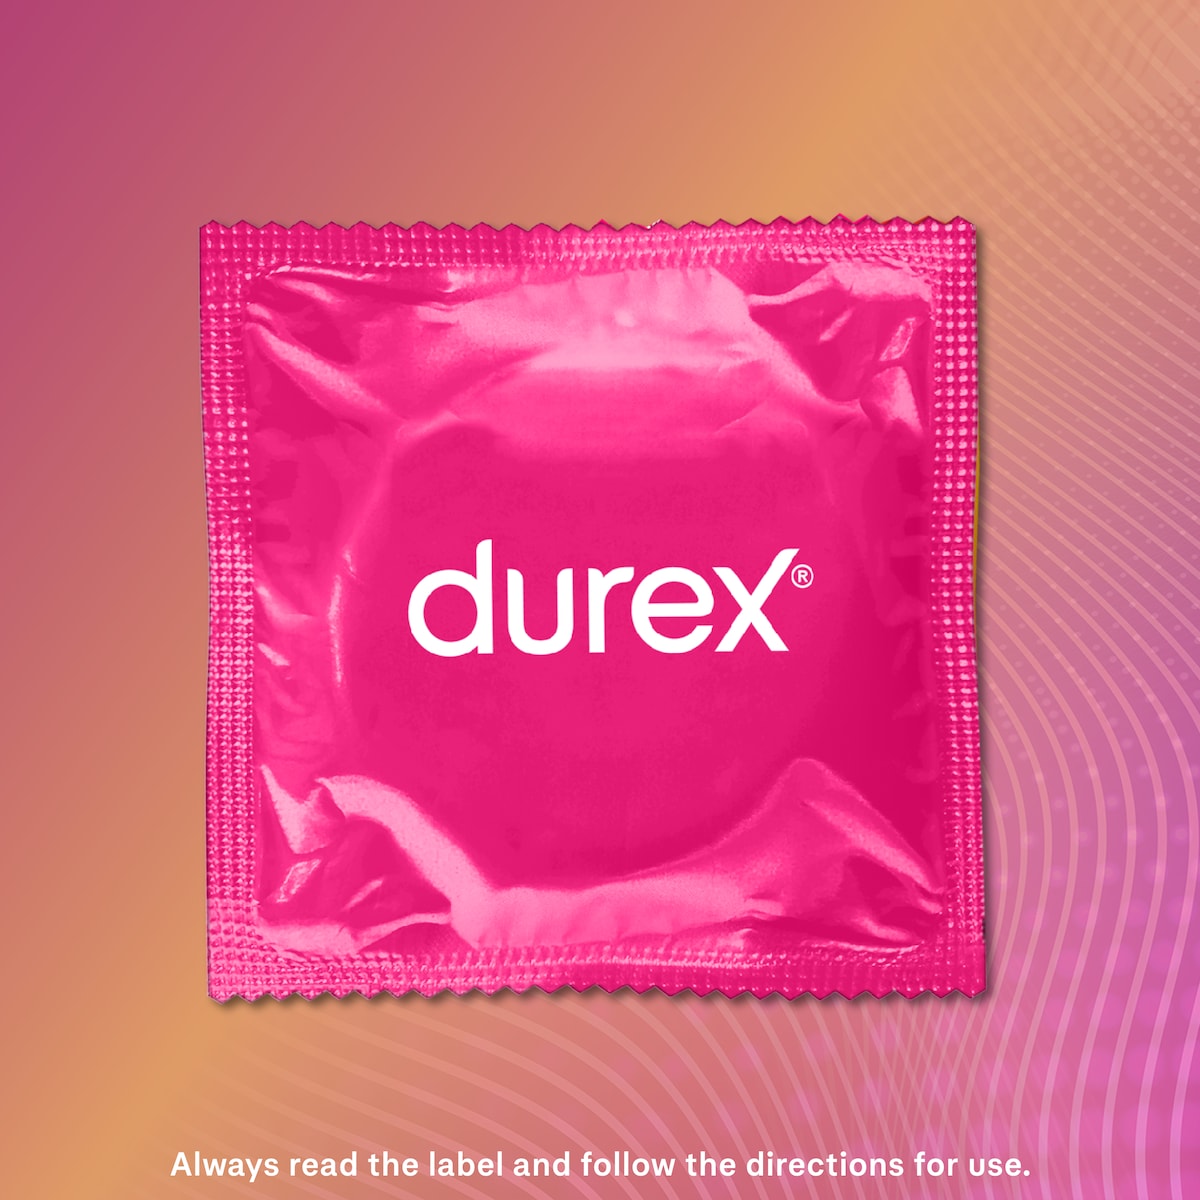 Durex Pleasure Me Regular Fit Condoms 30 Pack Value Pack